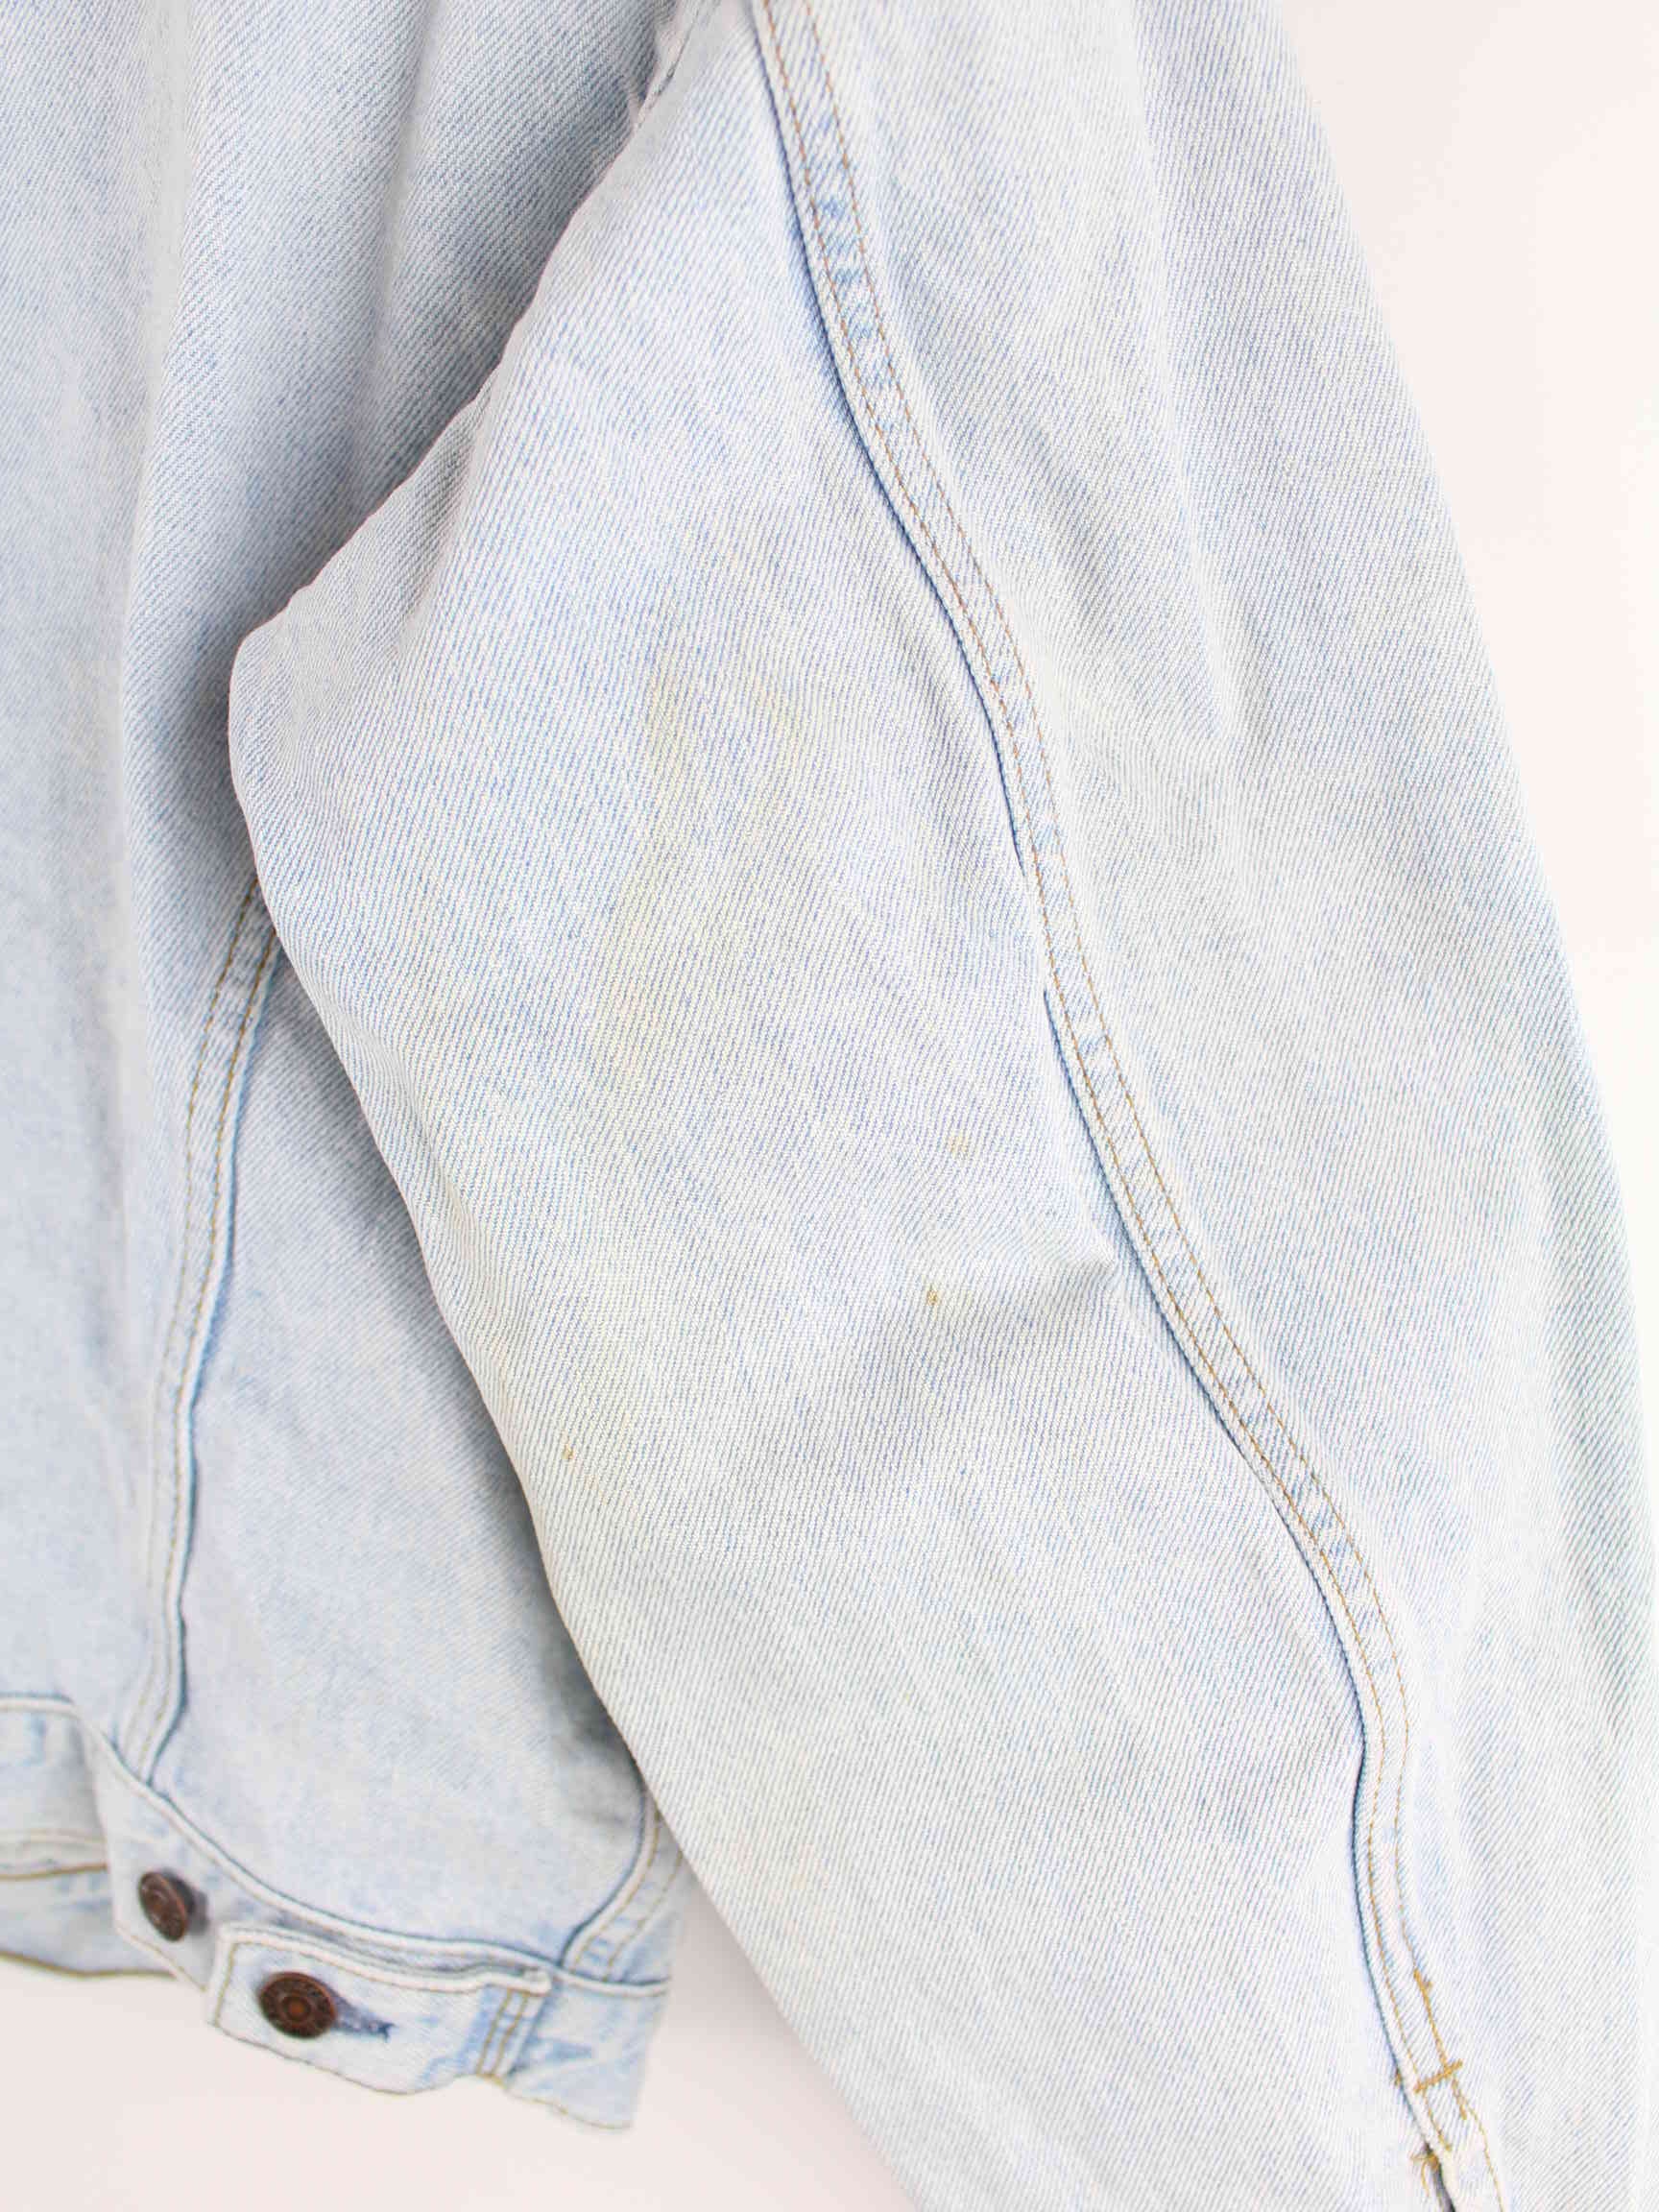 Levi's Vintage 1984 Jeans Jacke Blau L (detail image 13)